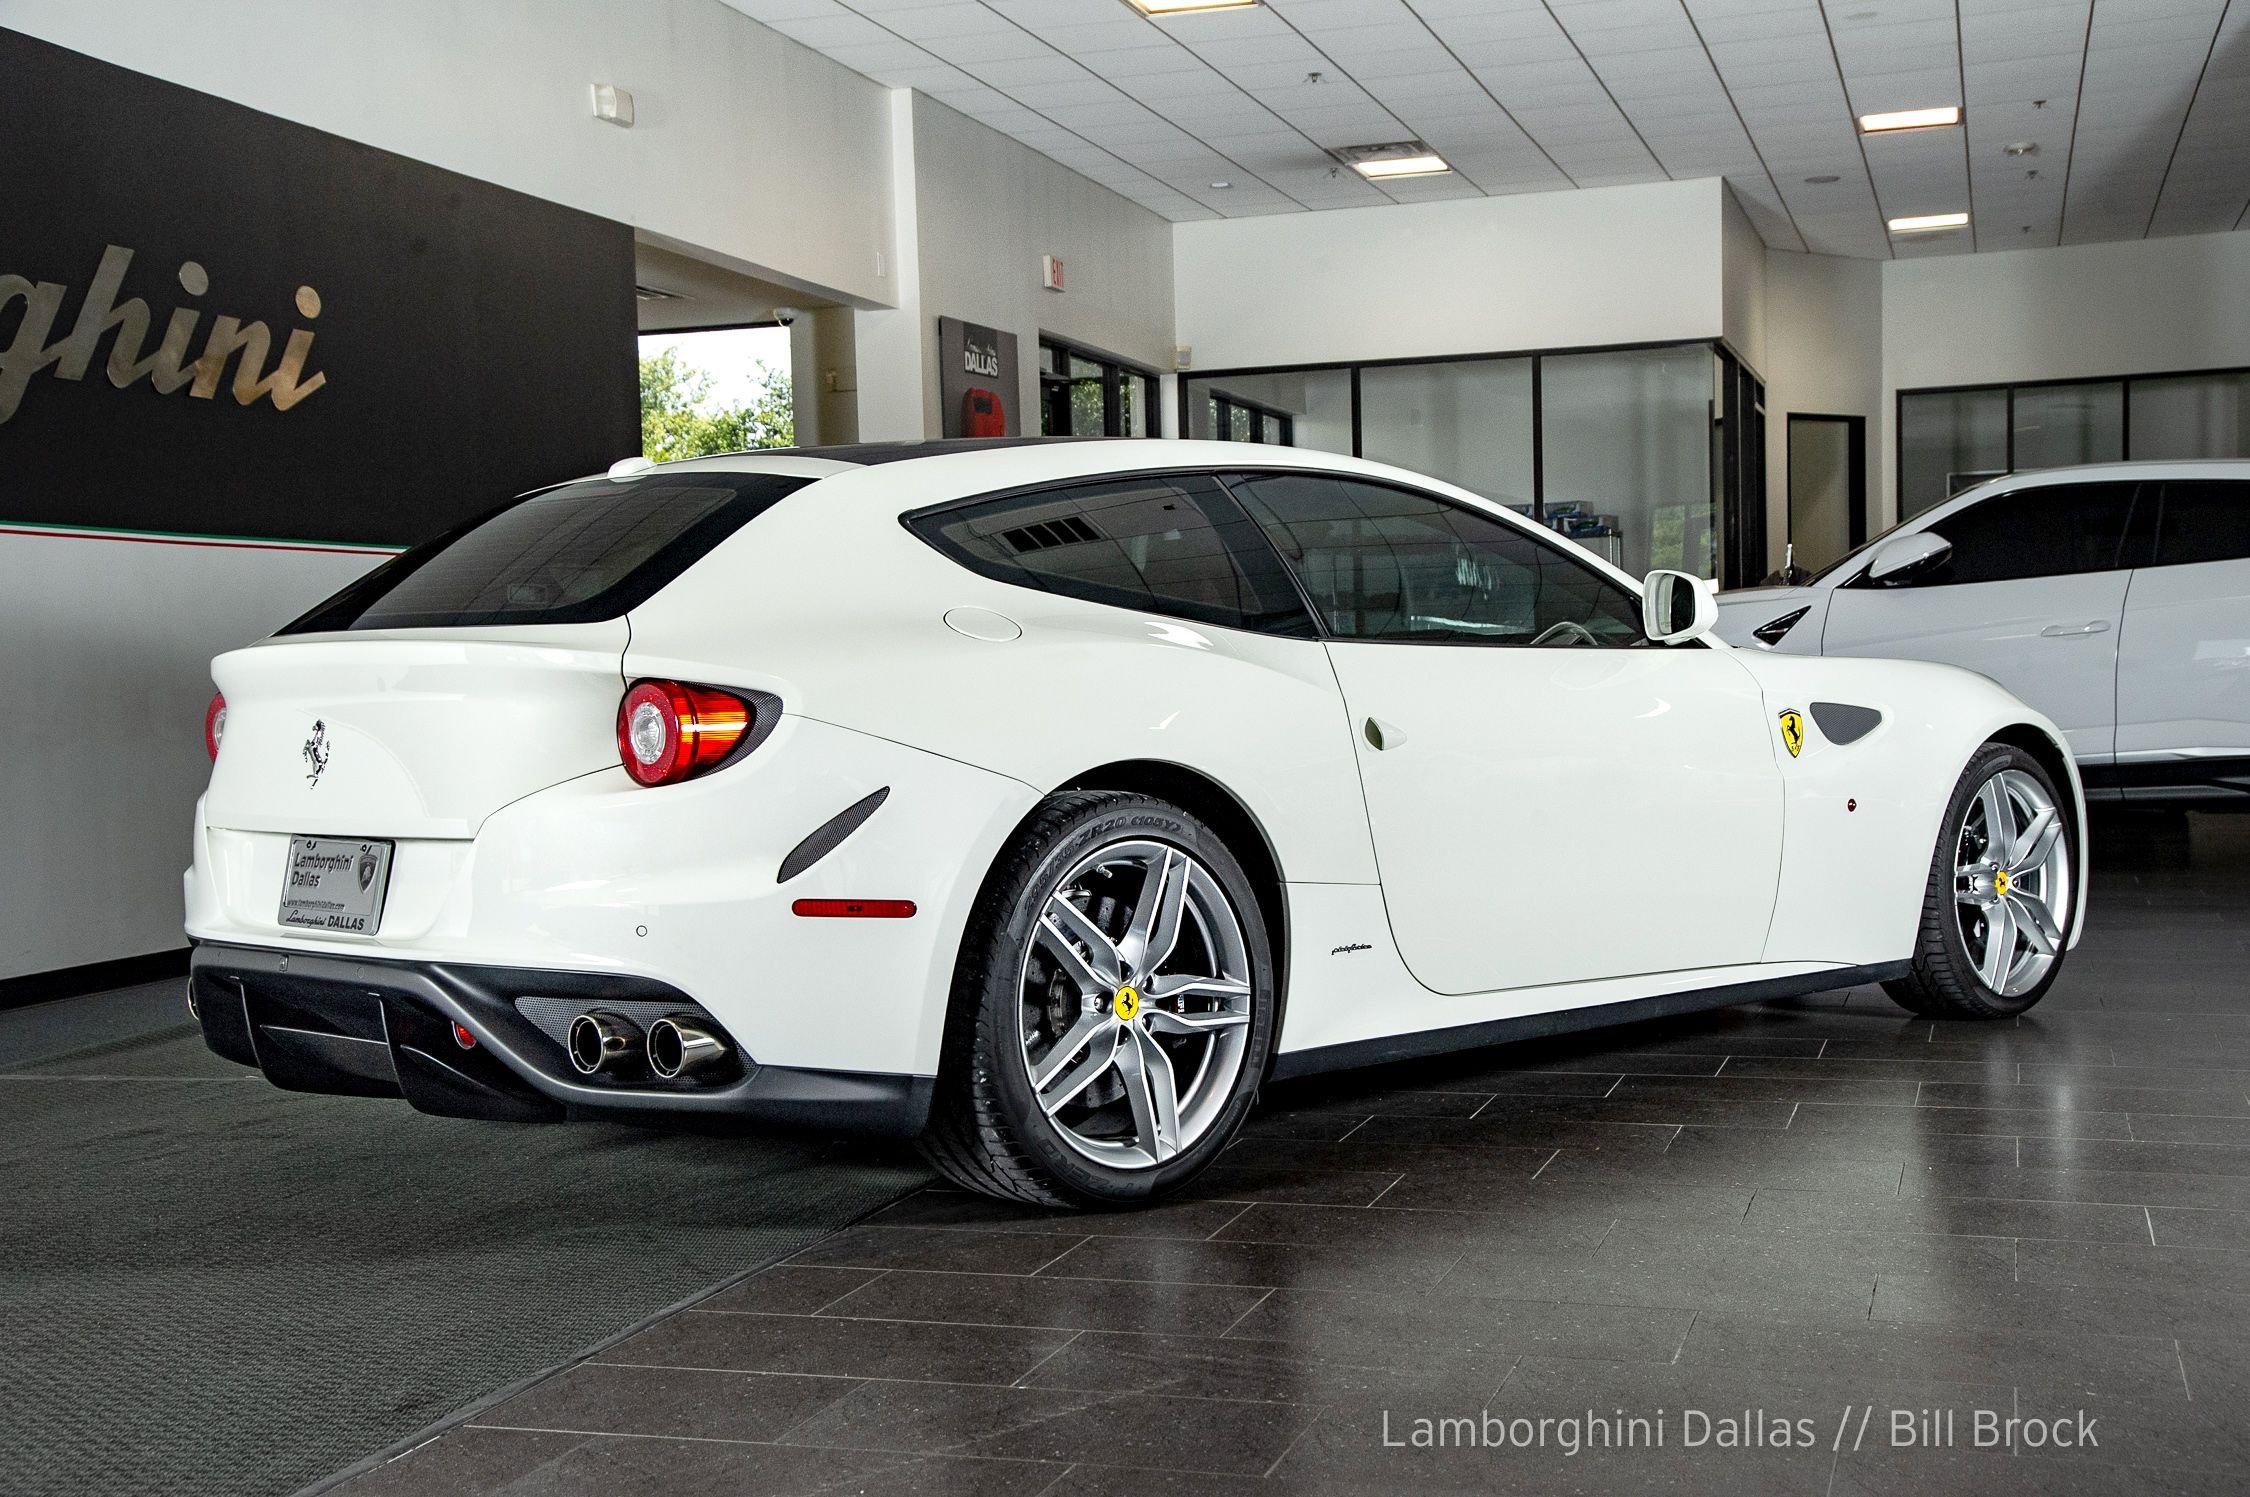 Used 2014 Ferrari FF For Sale at LAMBORGHINI DALLAS | VIN 